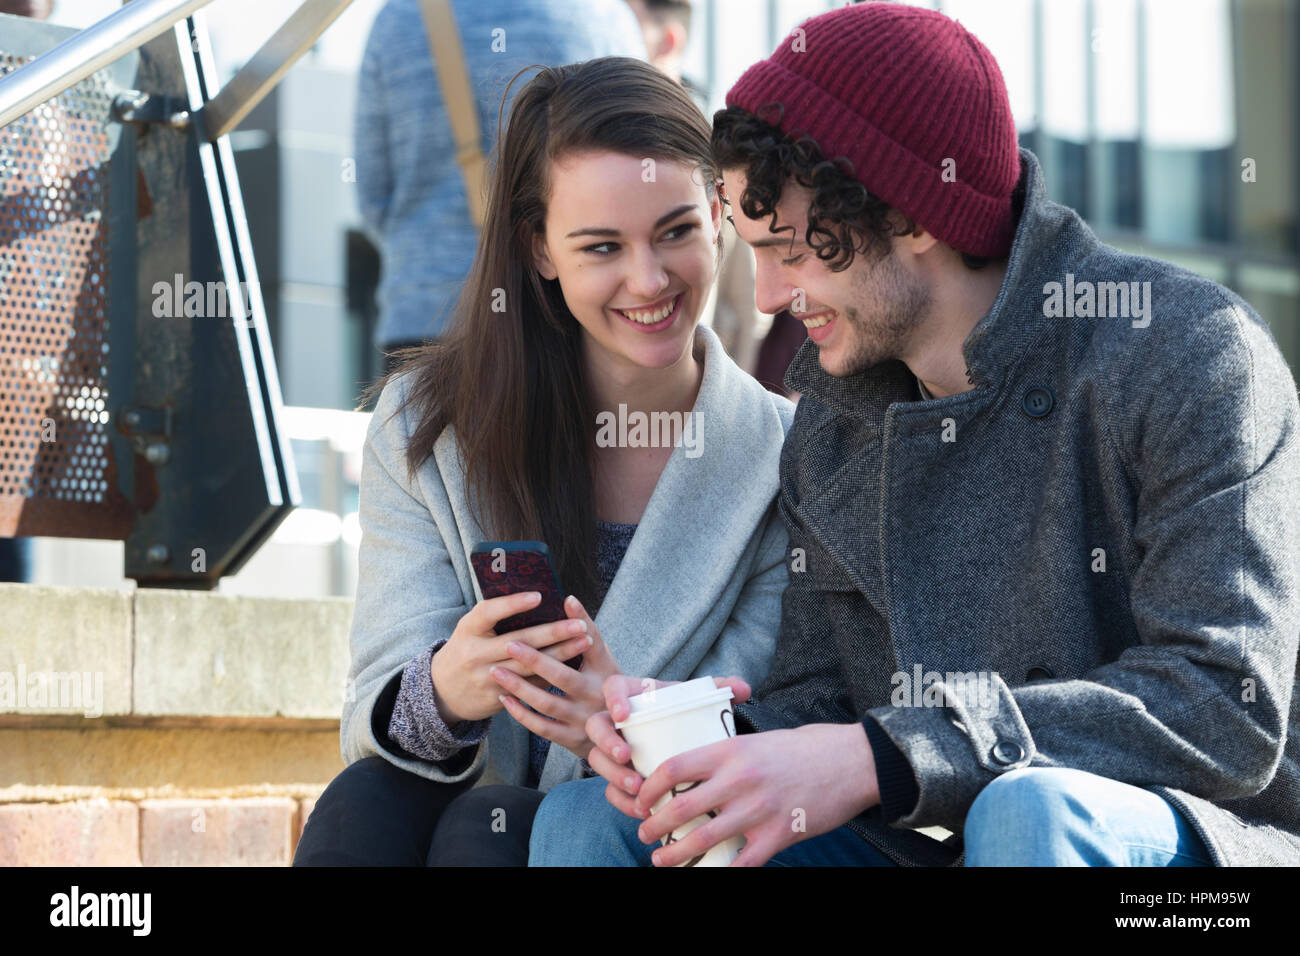 Eine Nahaufnahme von ein glückliches junges Paar Lächeln, als sie auf einige sitzen Schritte in der Stadt mit Blick auf ein Mobiltelefon. Das Männchen hält ein heißes Getränk in ein Stockfoto